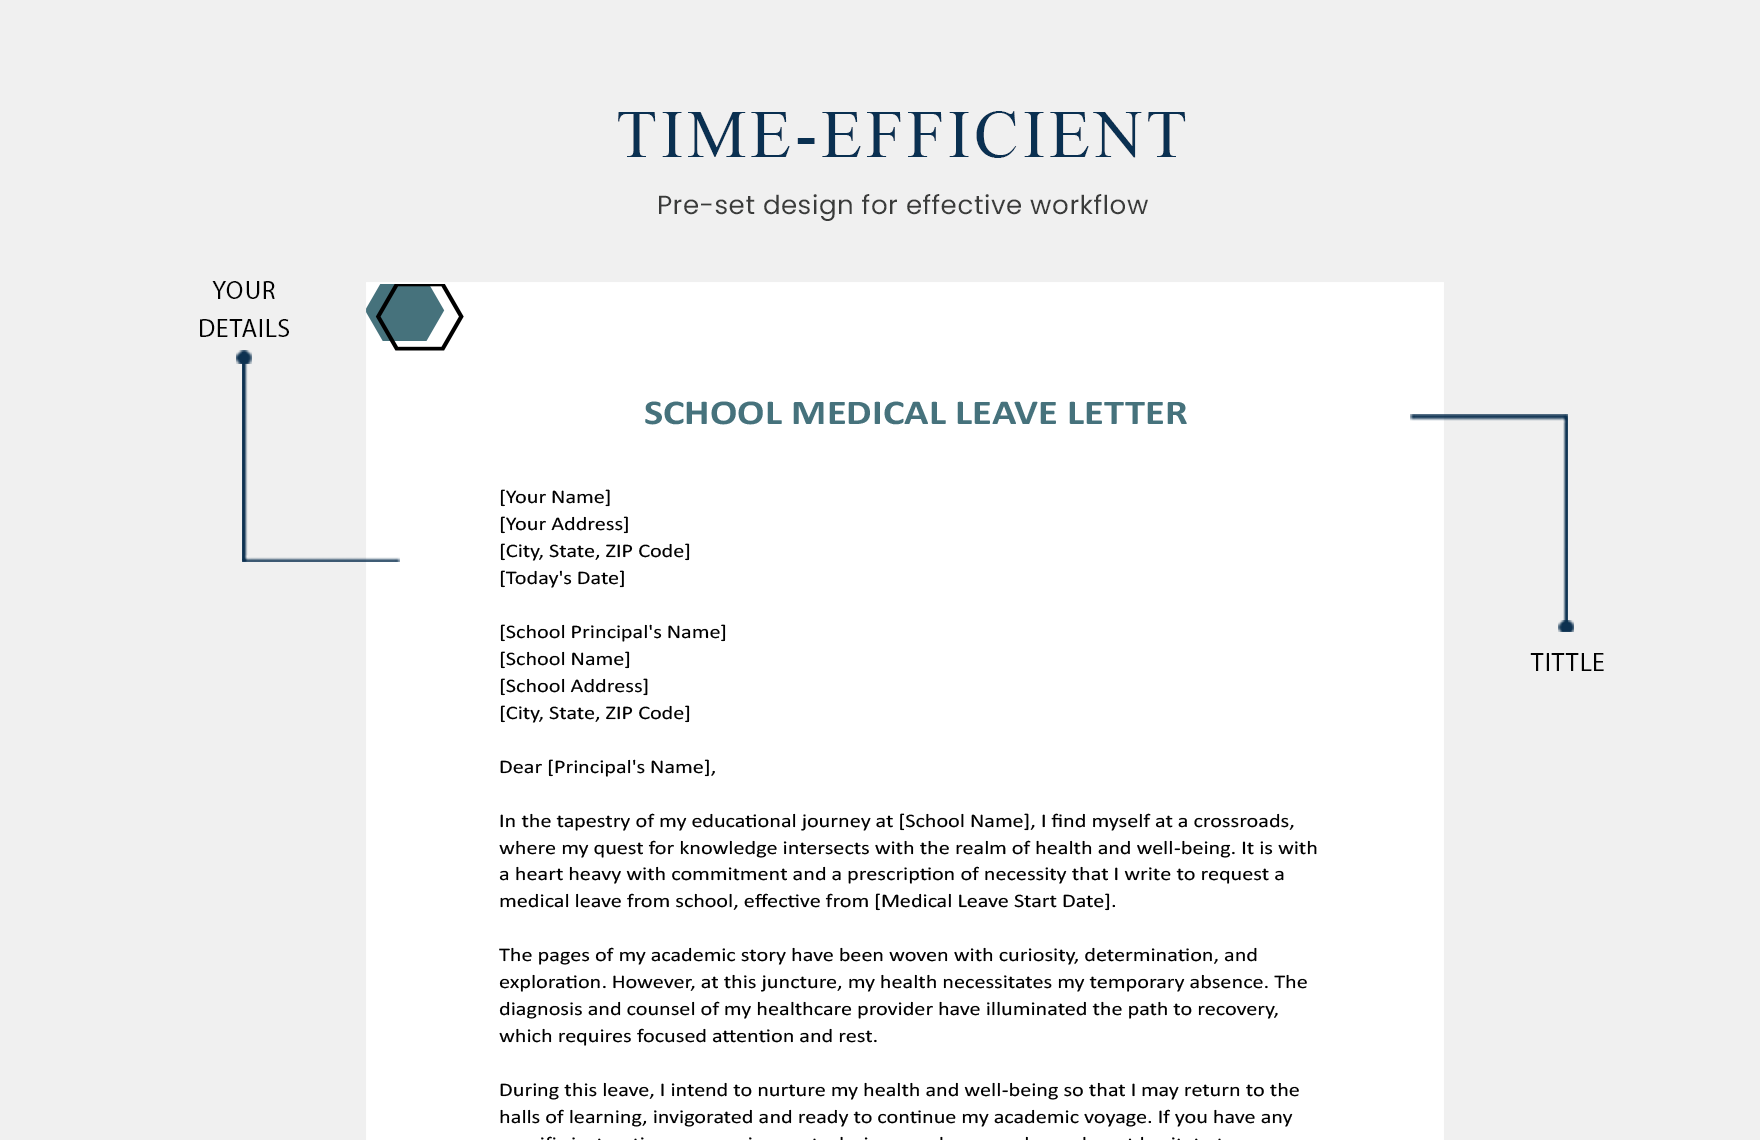 School Medical Leave Letter